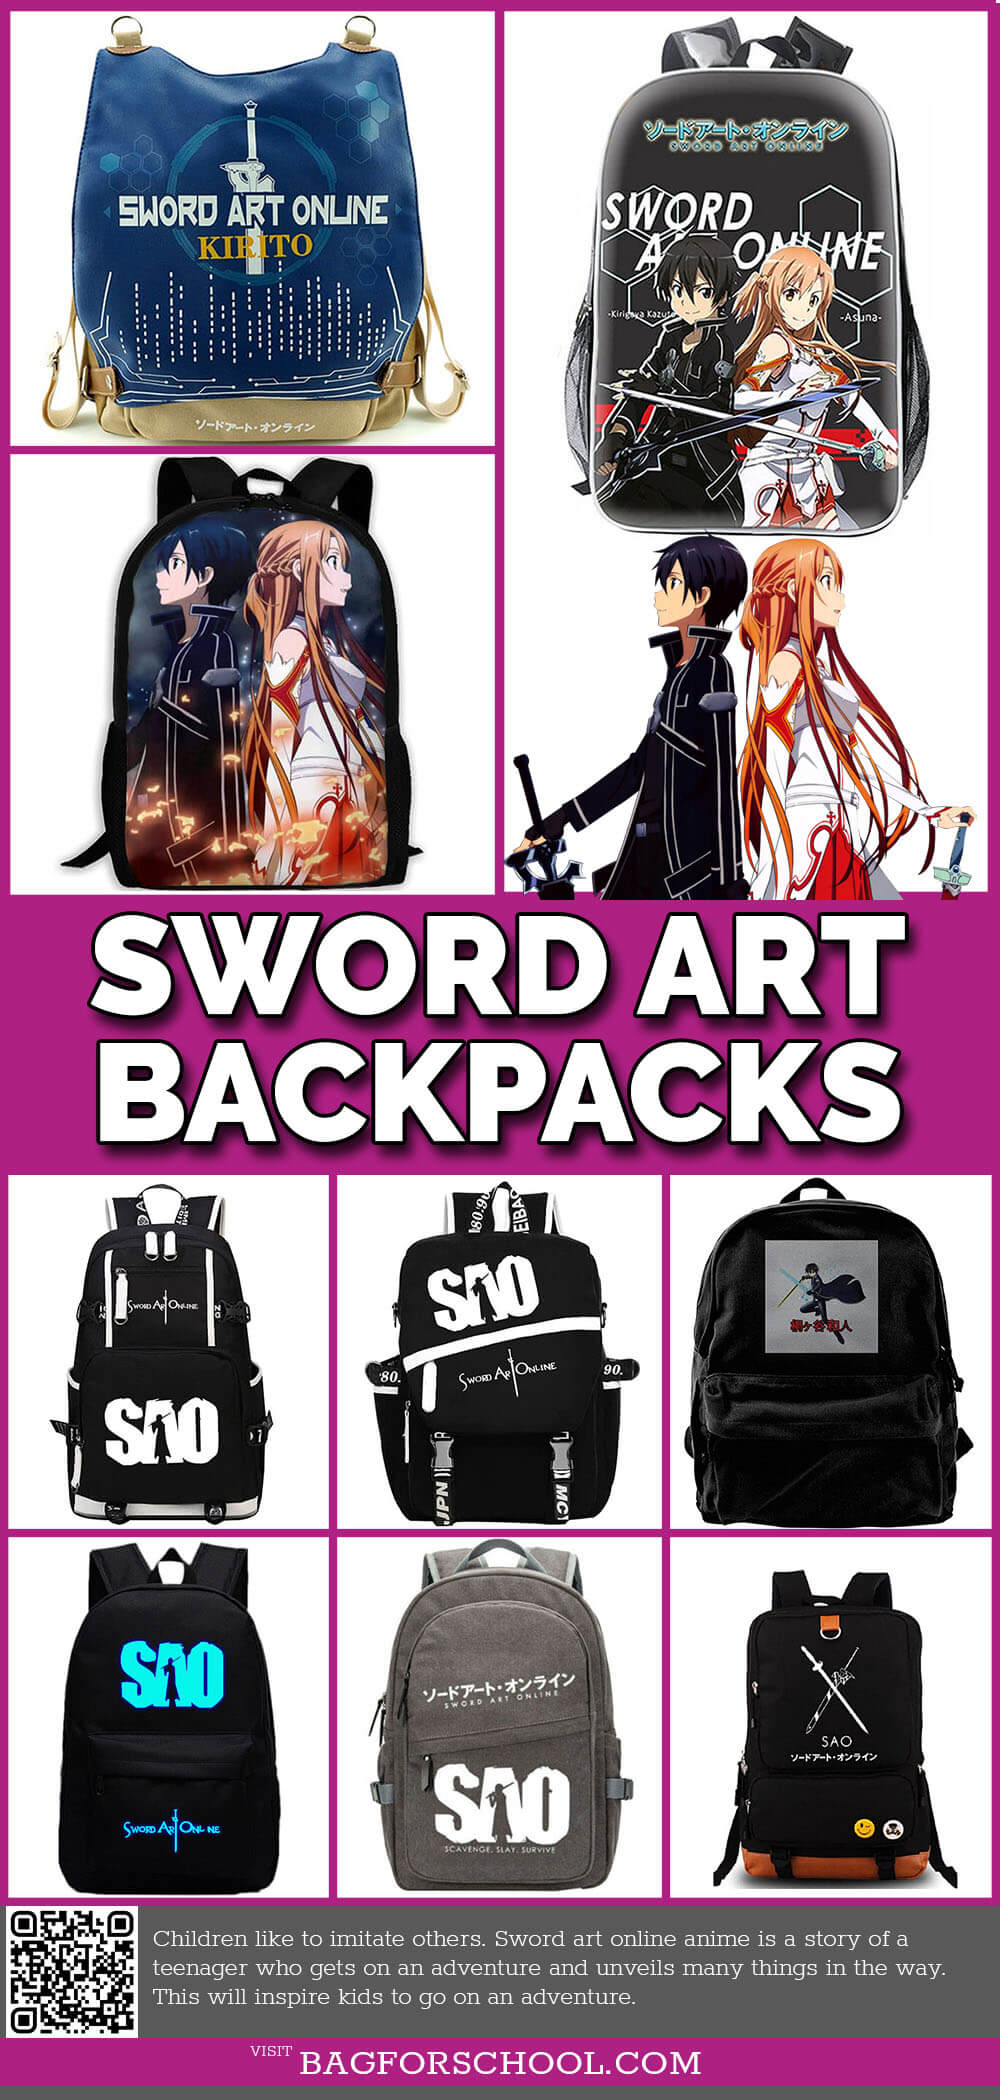 Sword-Art-Online-Backpacks-1